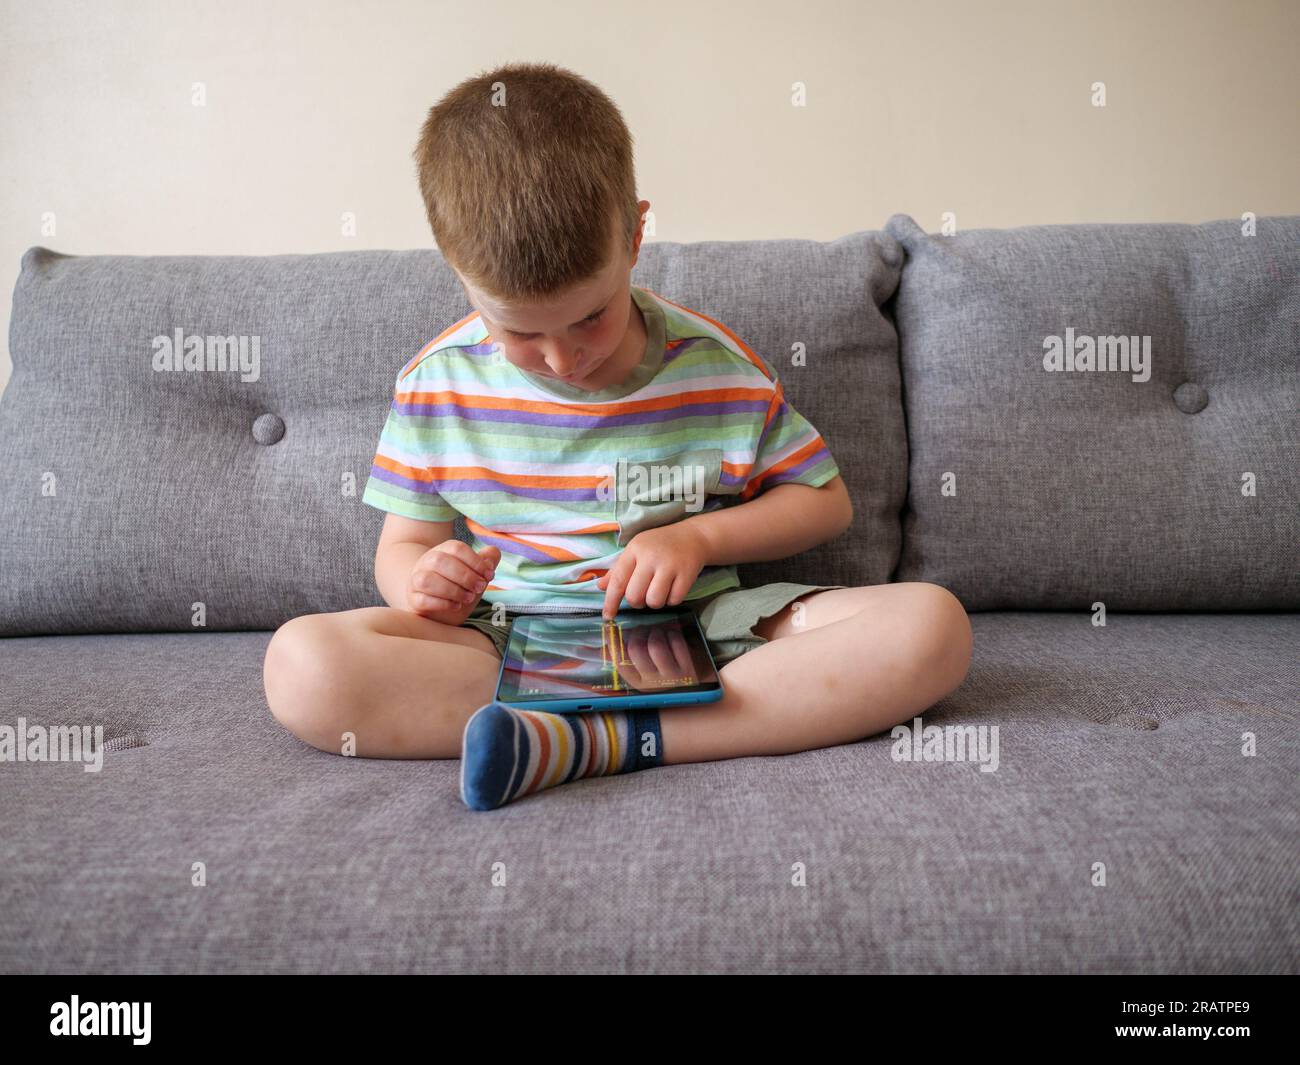 Kleines, vierjähriges Kind, das zu Hause auf einem Tablet spielt Stockfoto